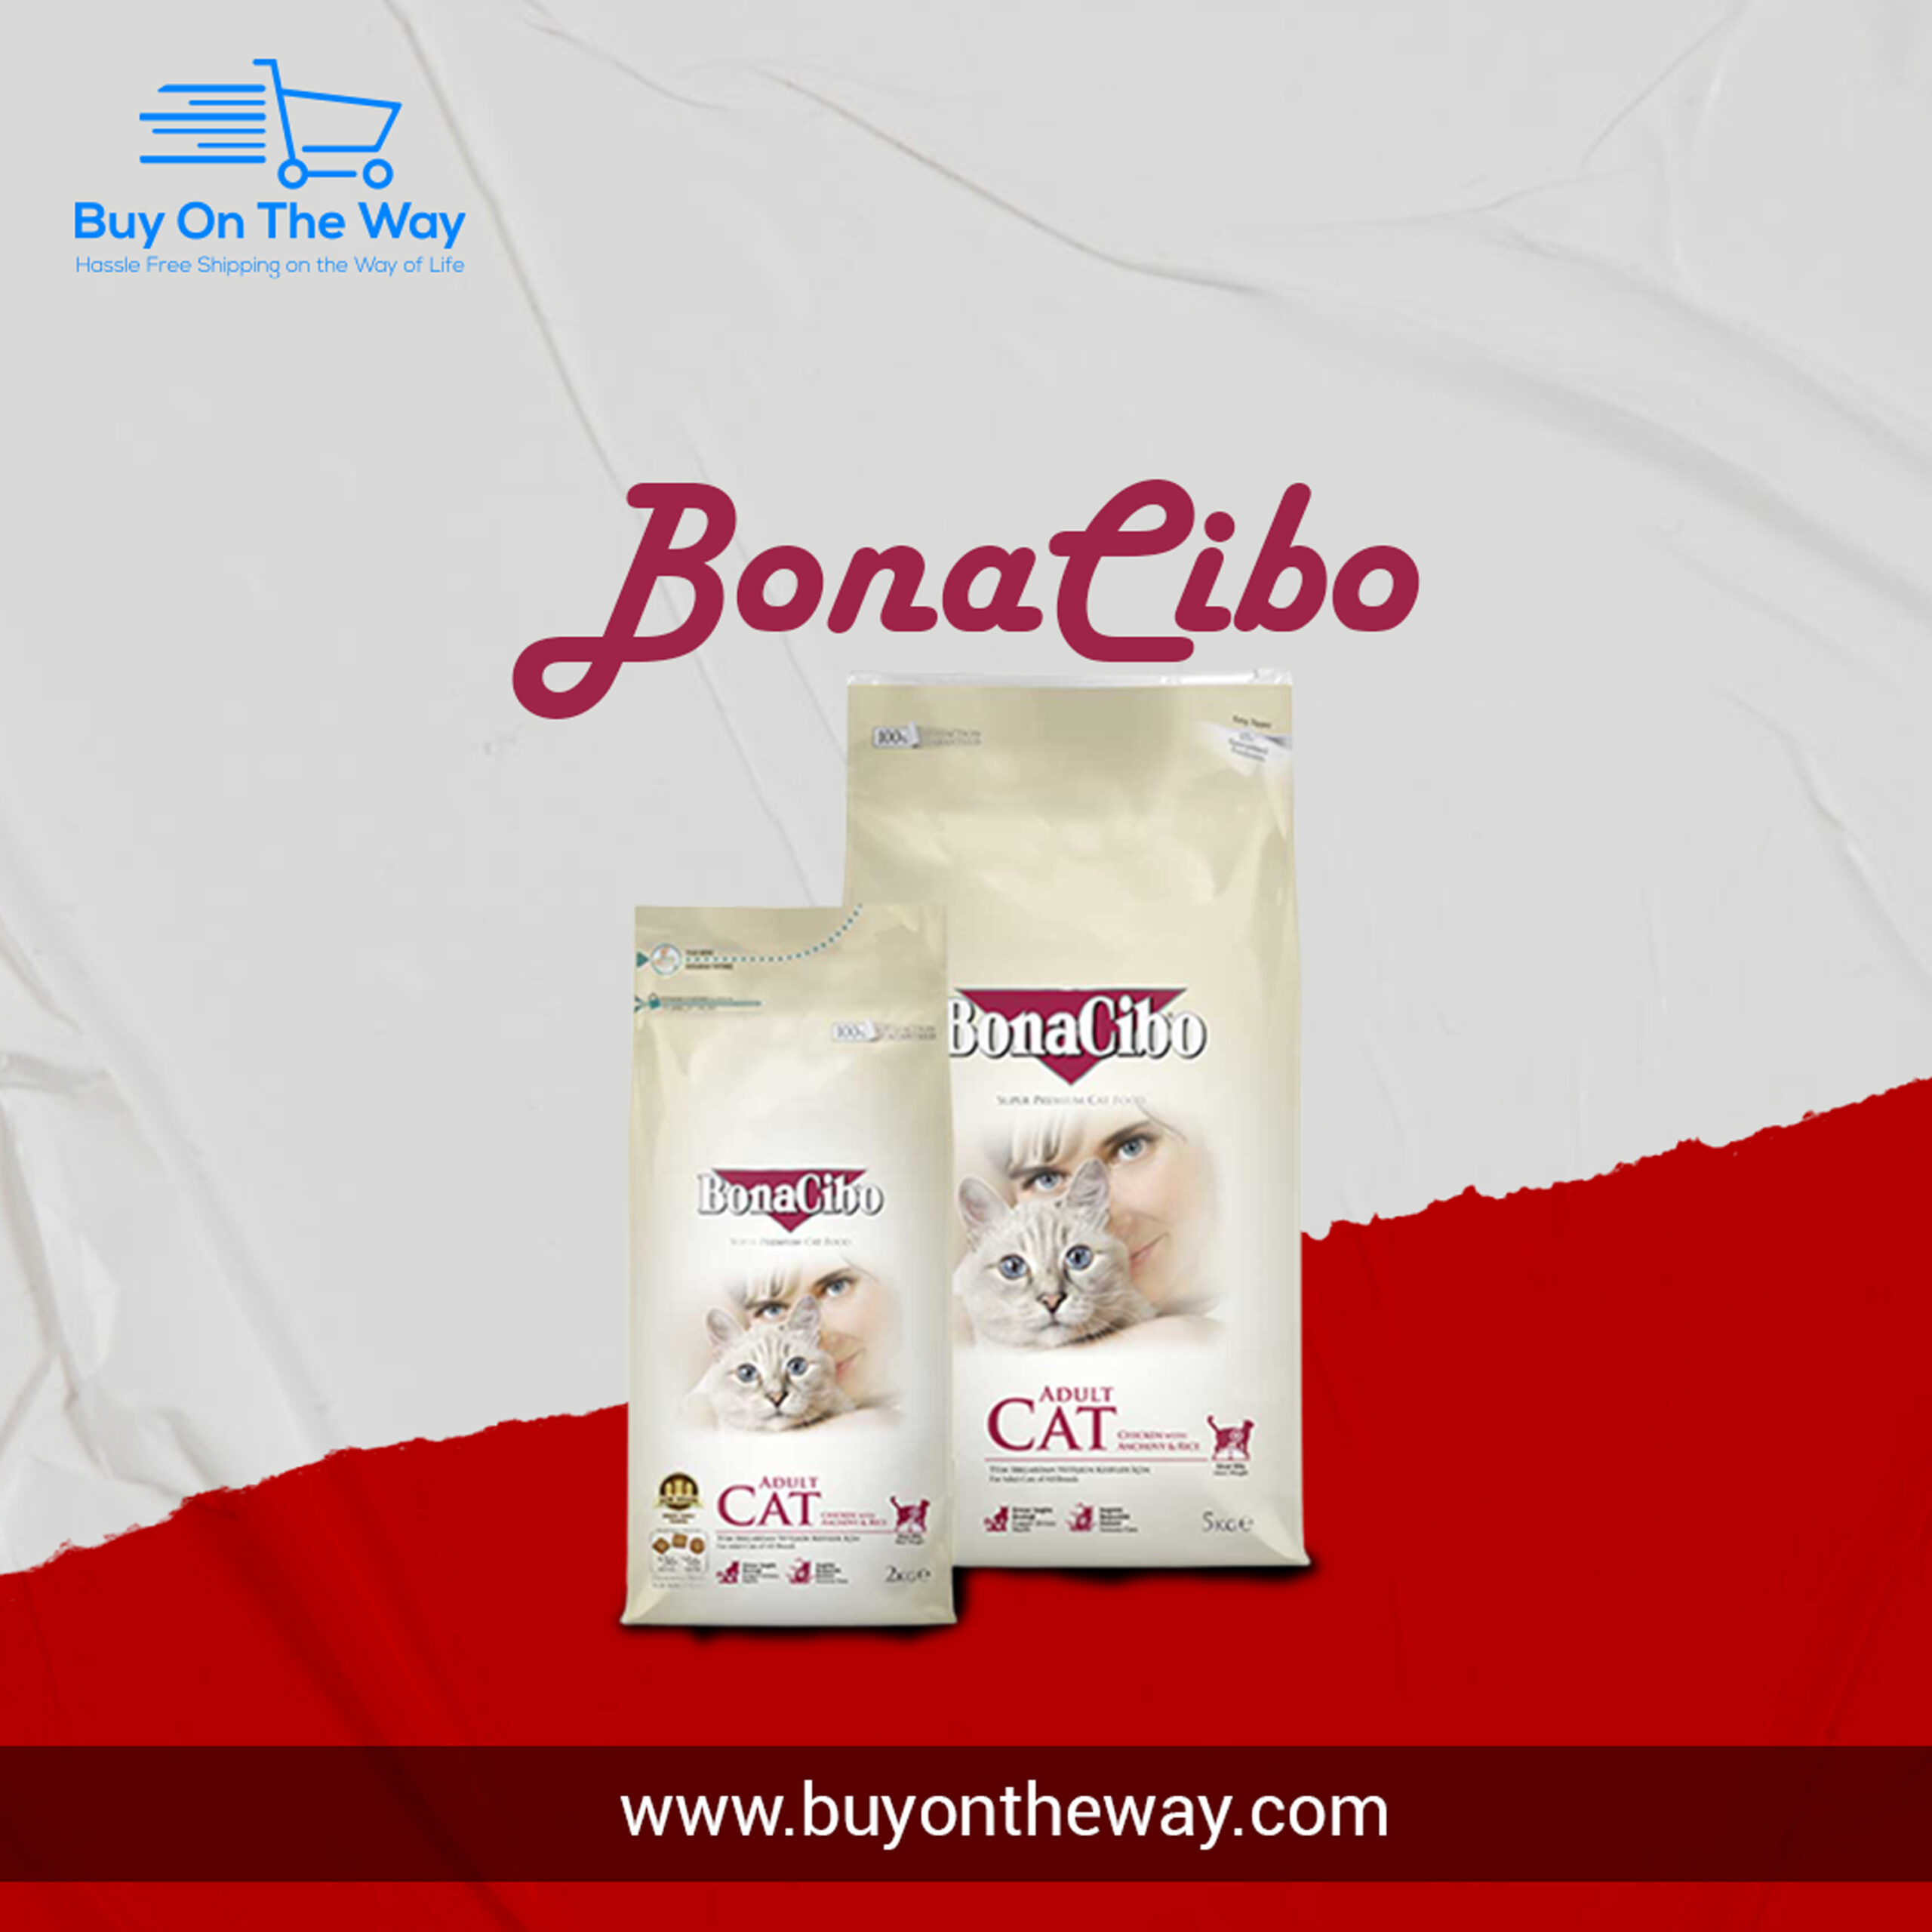 Bona-Cibo (Buyontheway)